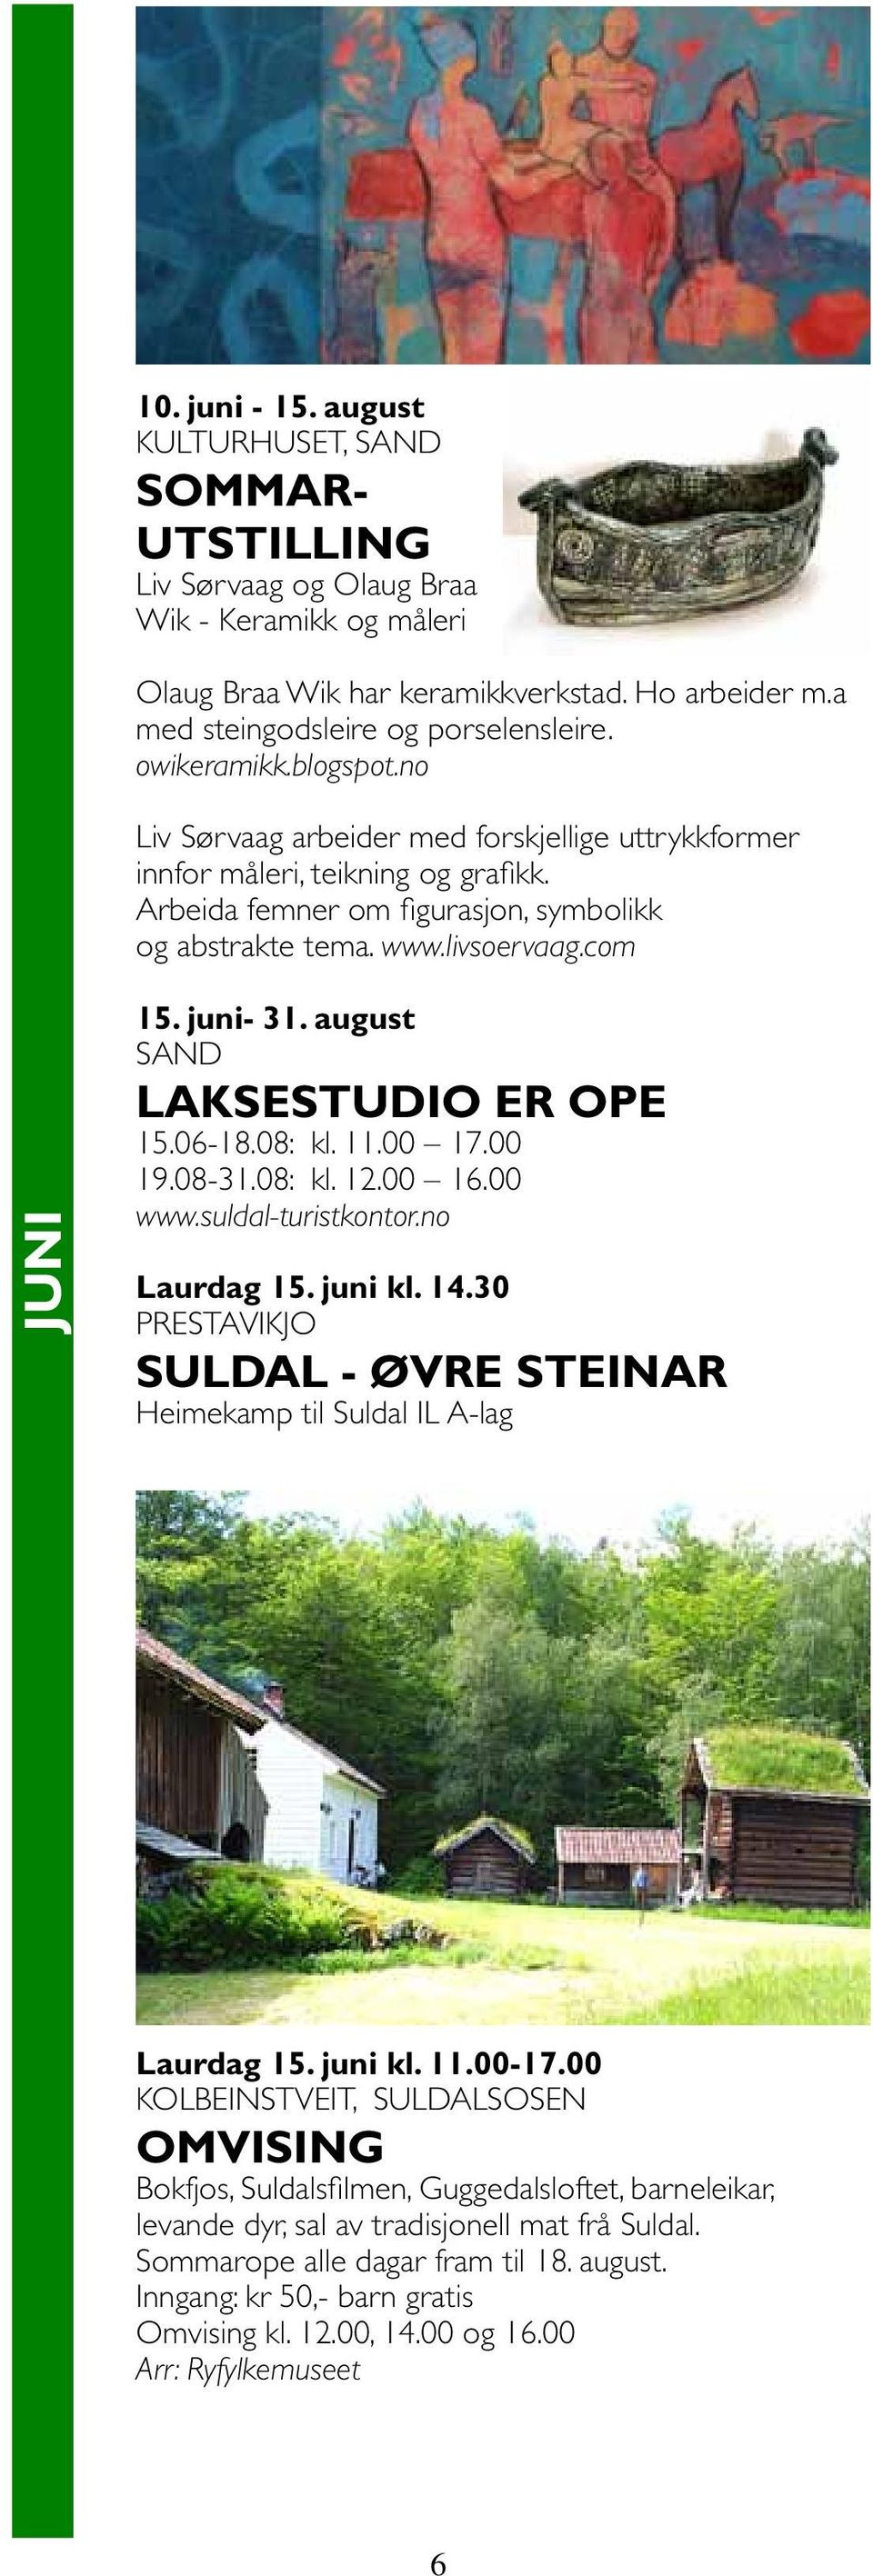 juni- 31. august SAND Laksestudio er ope 15.06-18.08: kl. 11.00 17.00 19.08-31.08: kl. 12.00 16.00 www.suldal-turistkontor.no Laurdag 15. juni kl. 14.